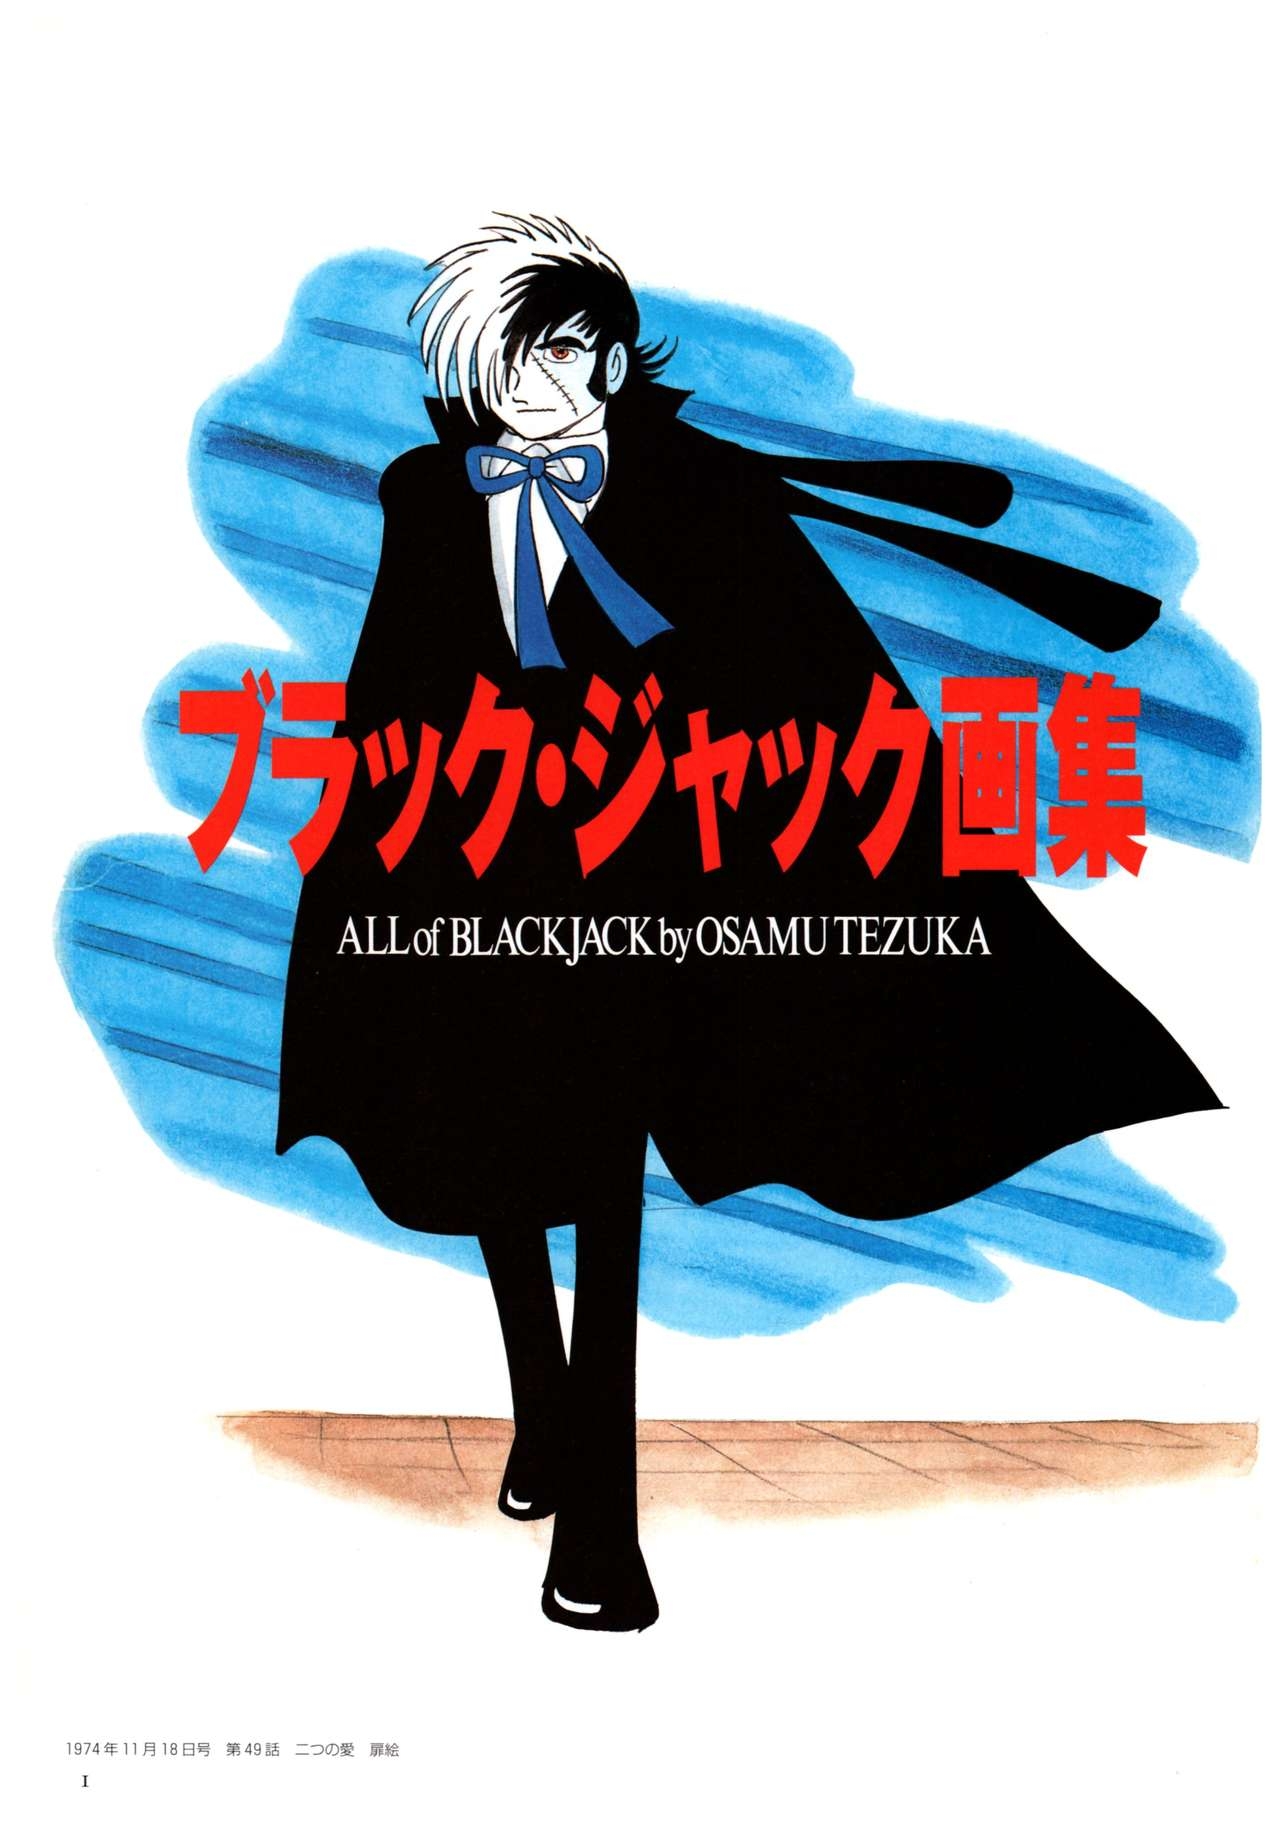 All of Black Jack By Osamu Tezuka 5